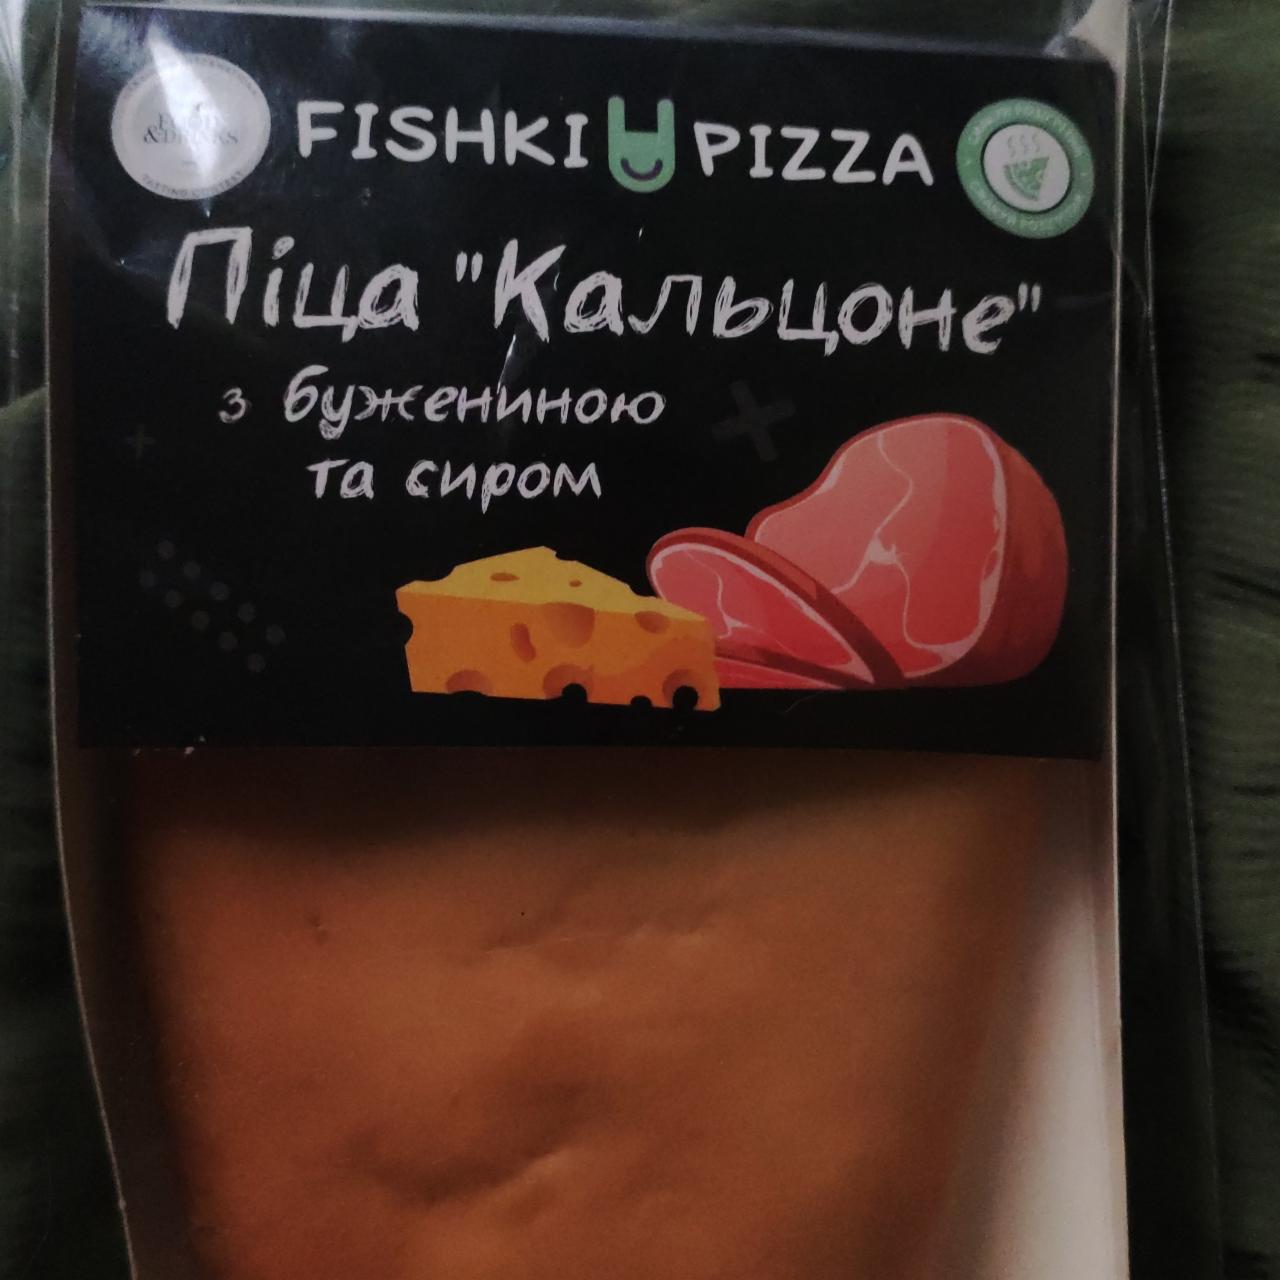 Фото - Пицца с бужениной и сыром Кальцоне Fishki Pizza